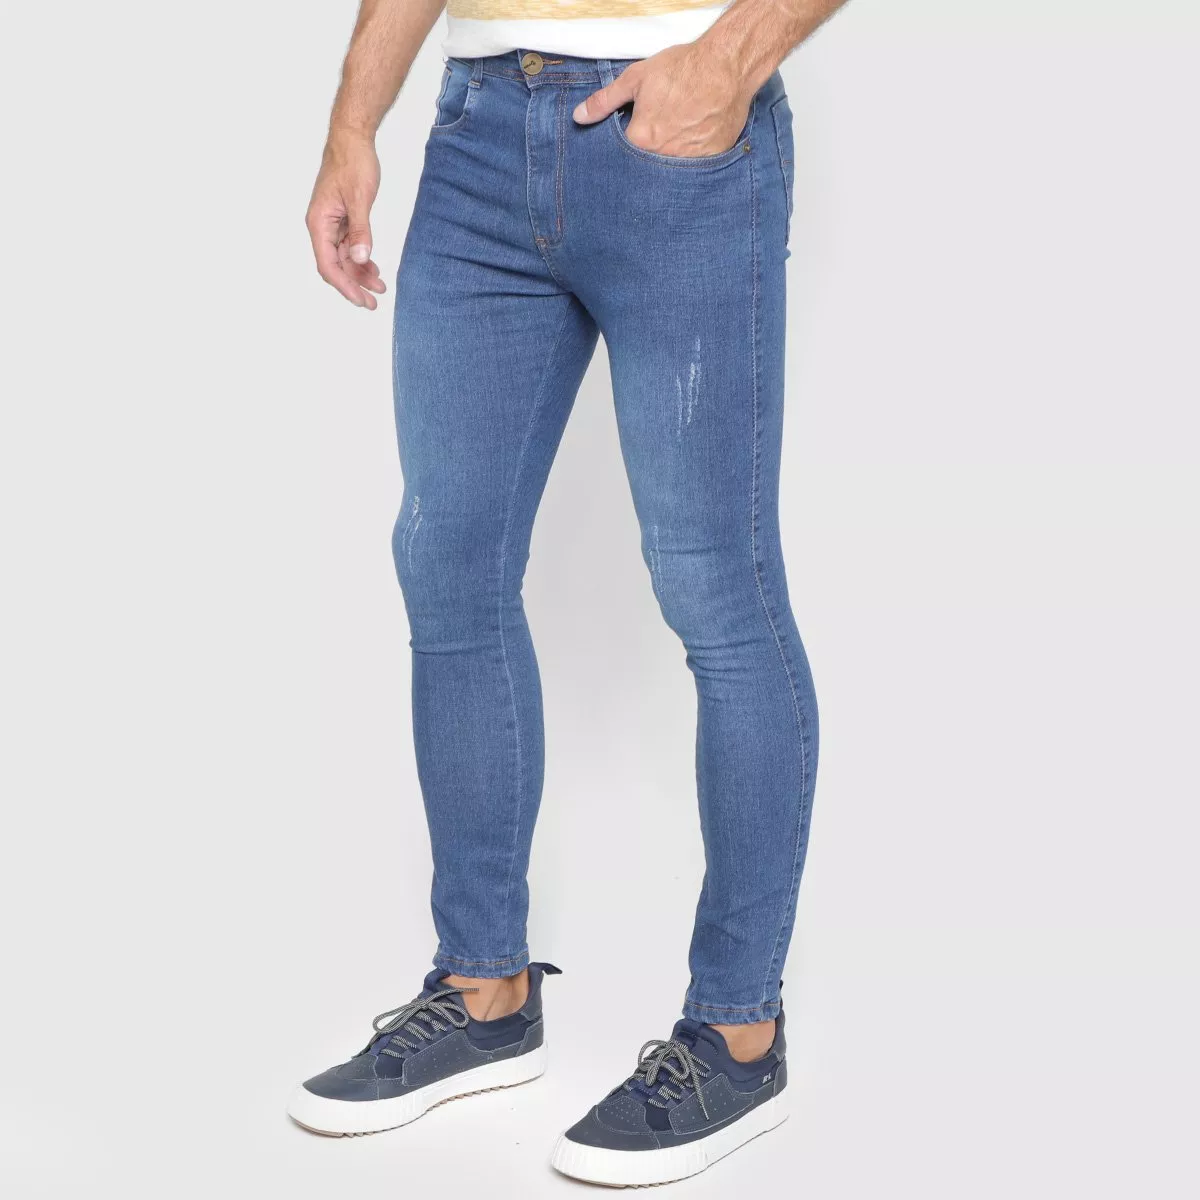 Cala Jeans Skinny Terminal Com Pudos Masculina